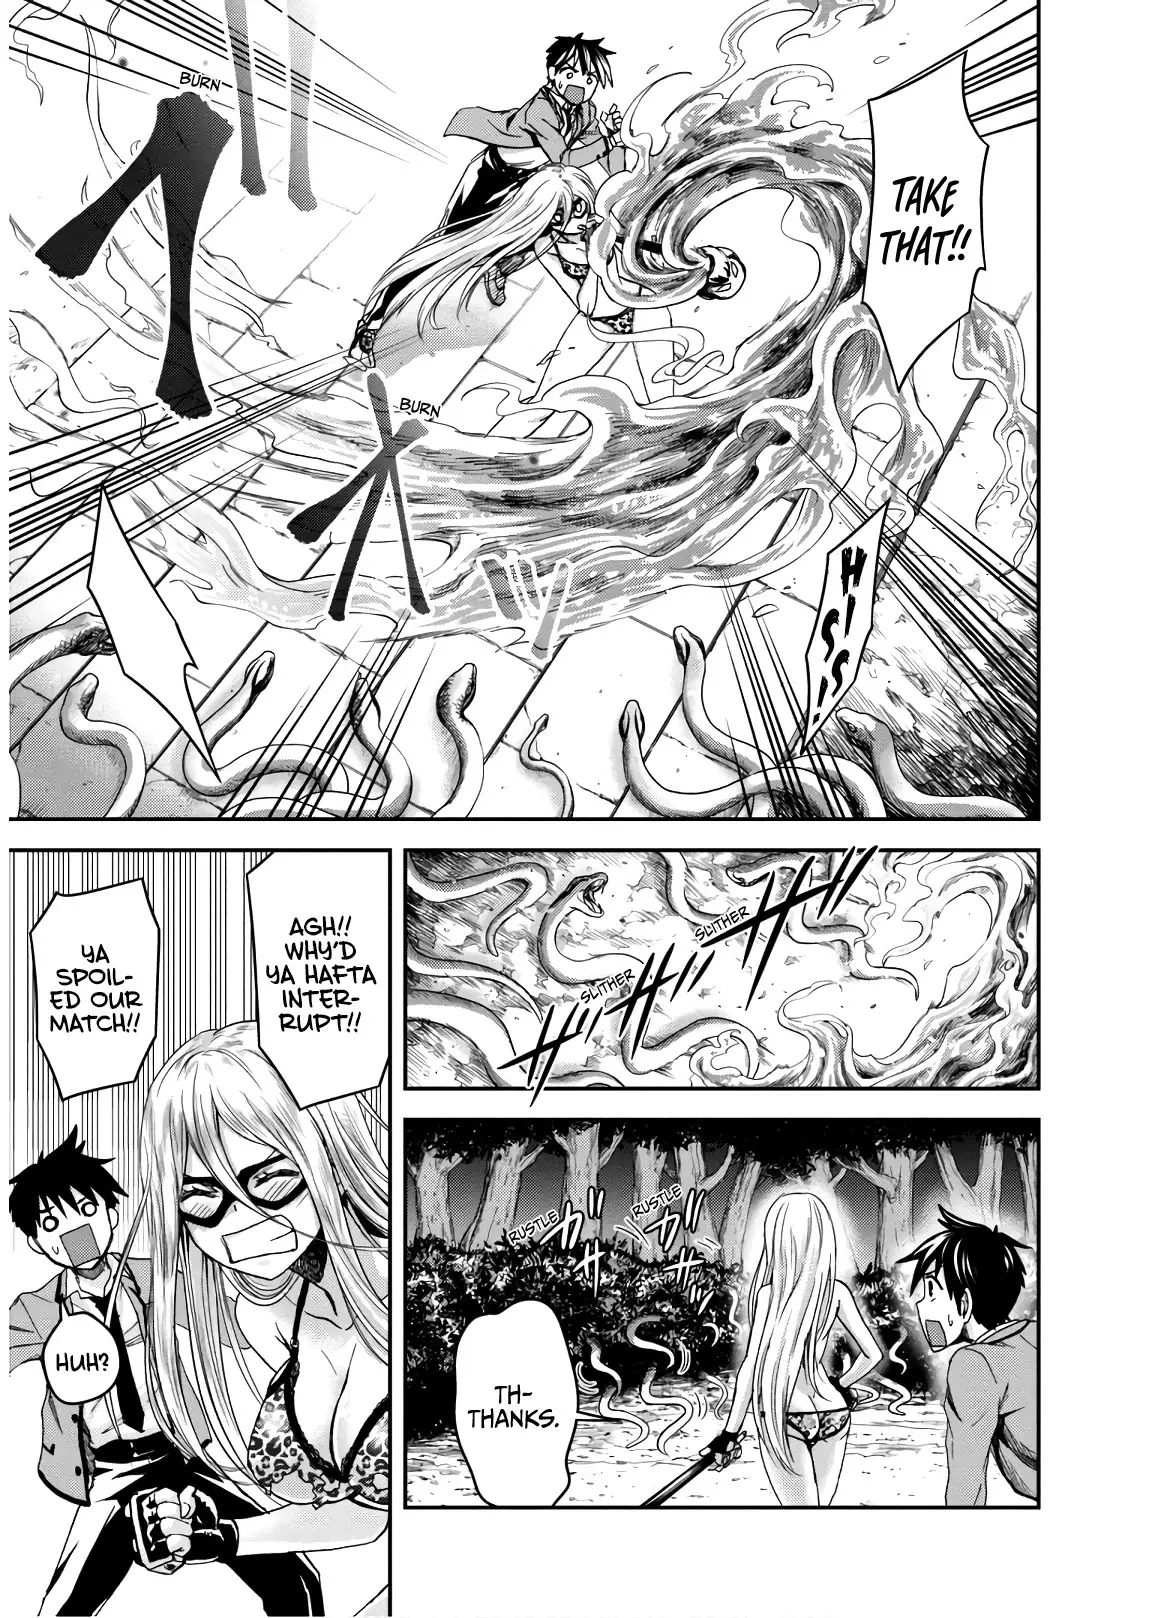 Shinobi Kill - 7 page 5